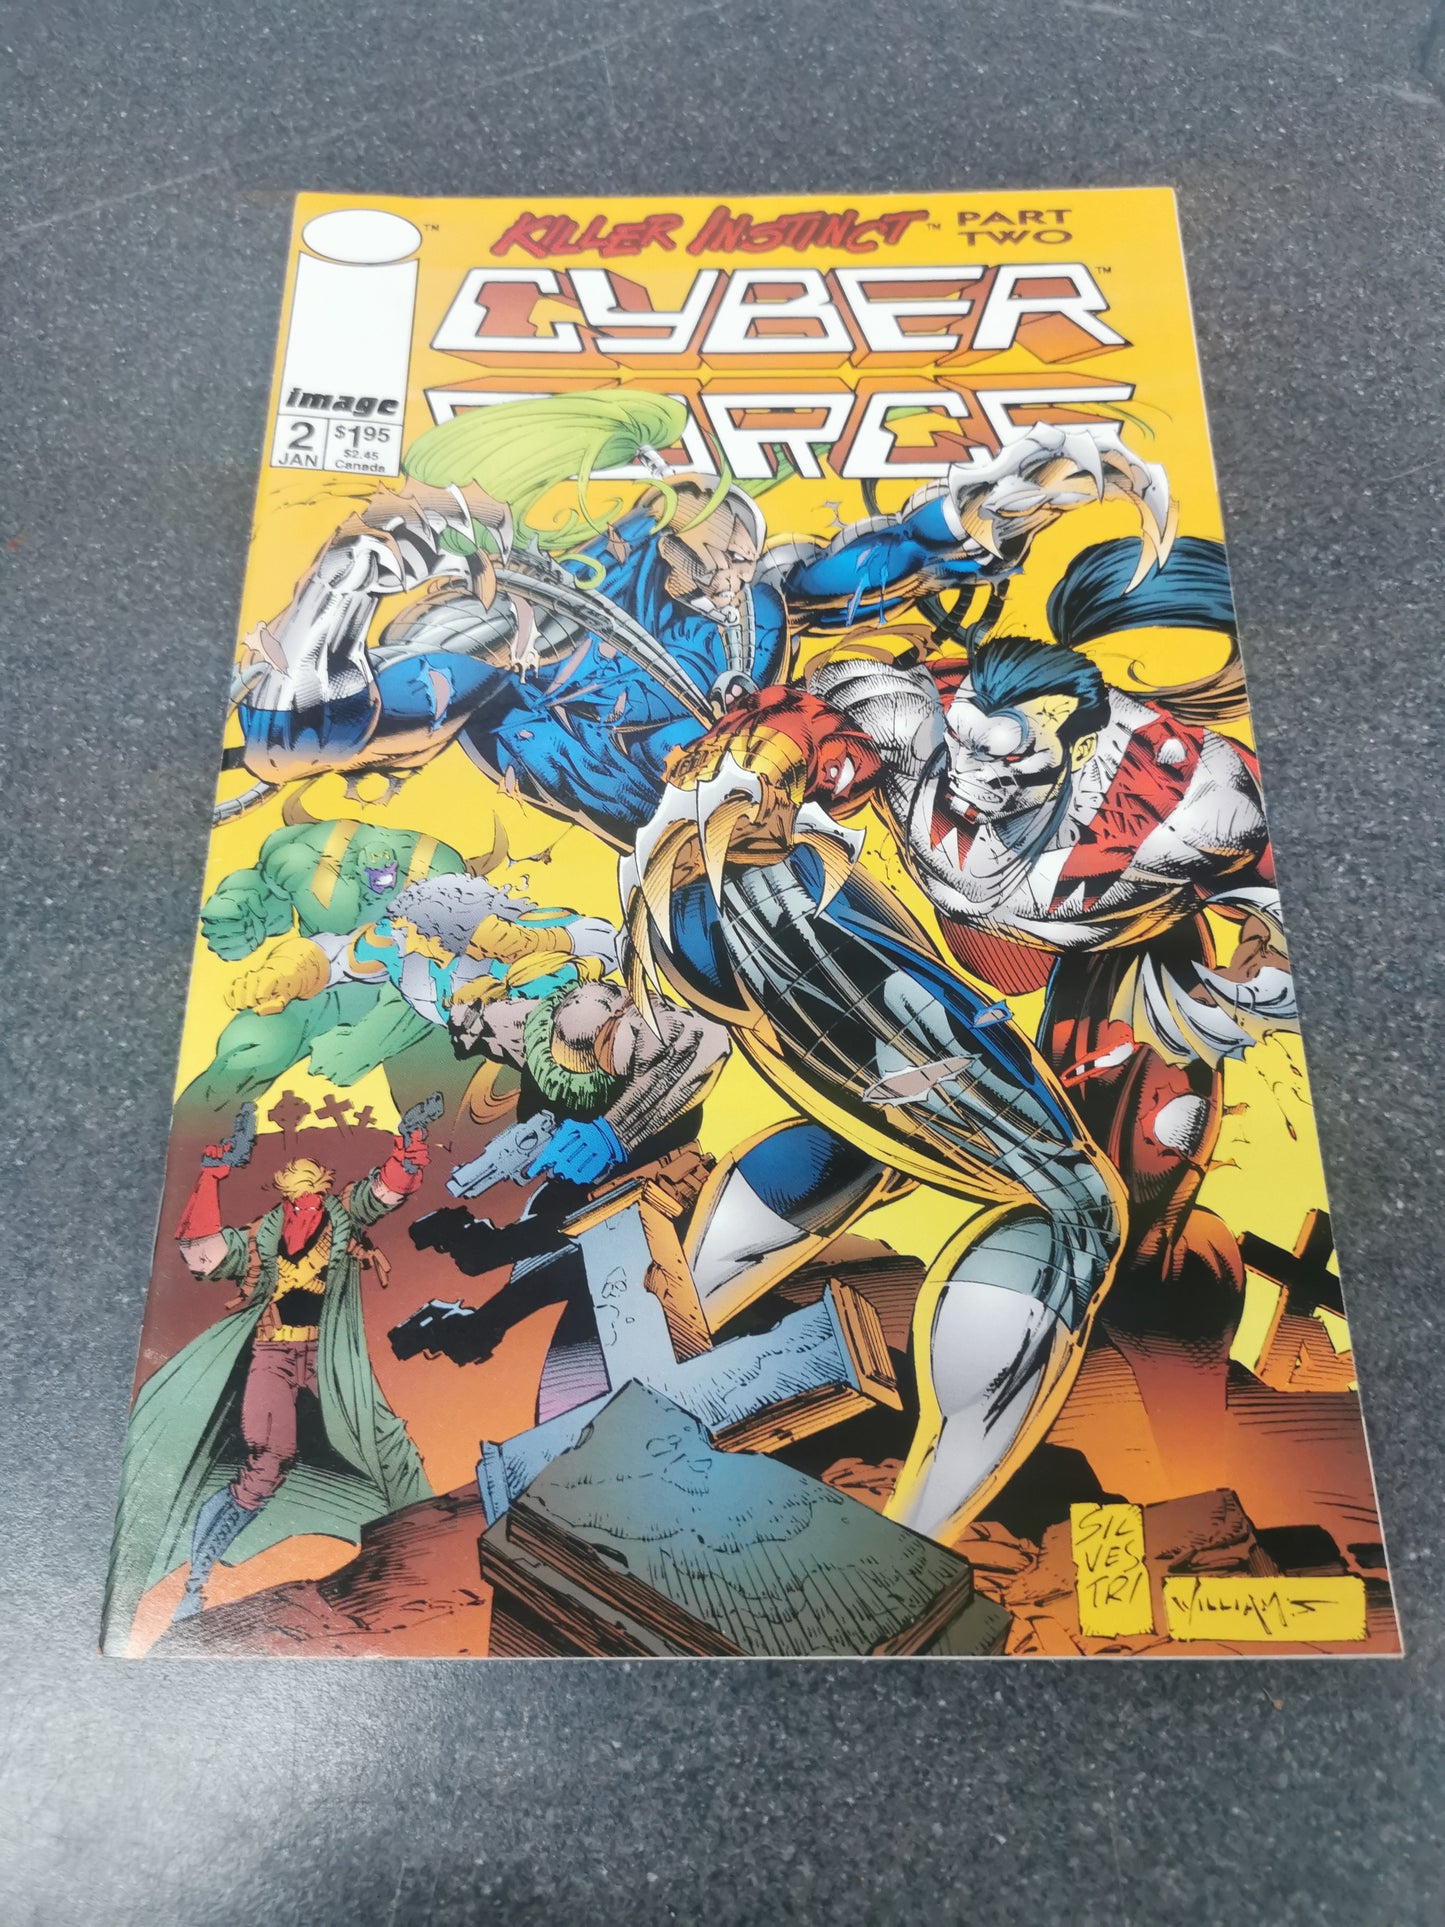 Cyber Force #2 1994 Image comics